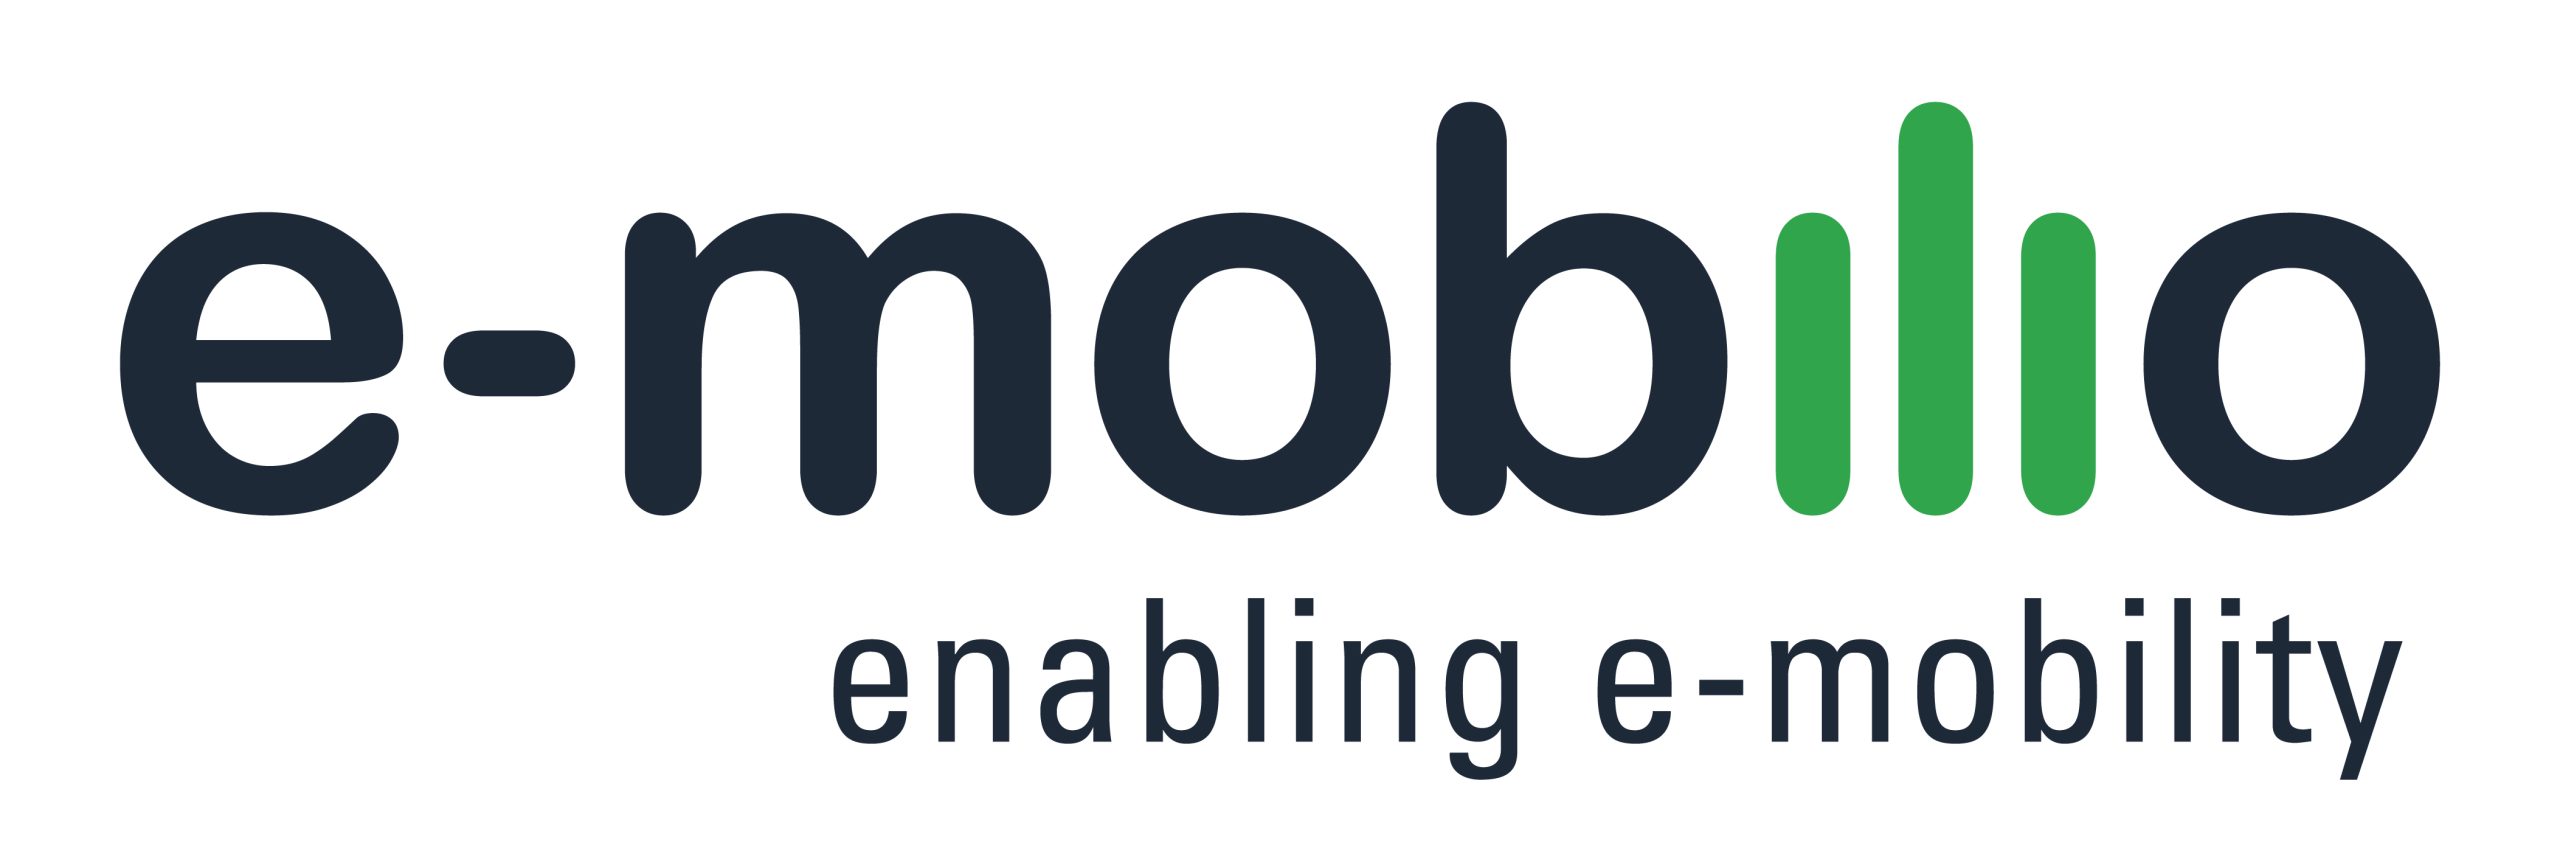 Profile image for e-mobilio GmbH